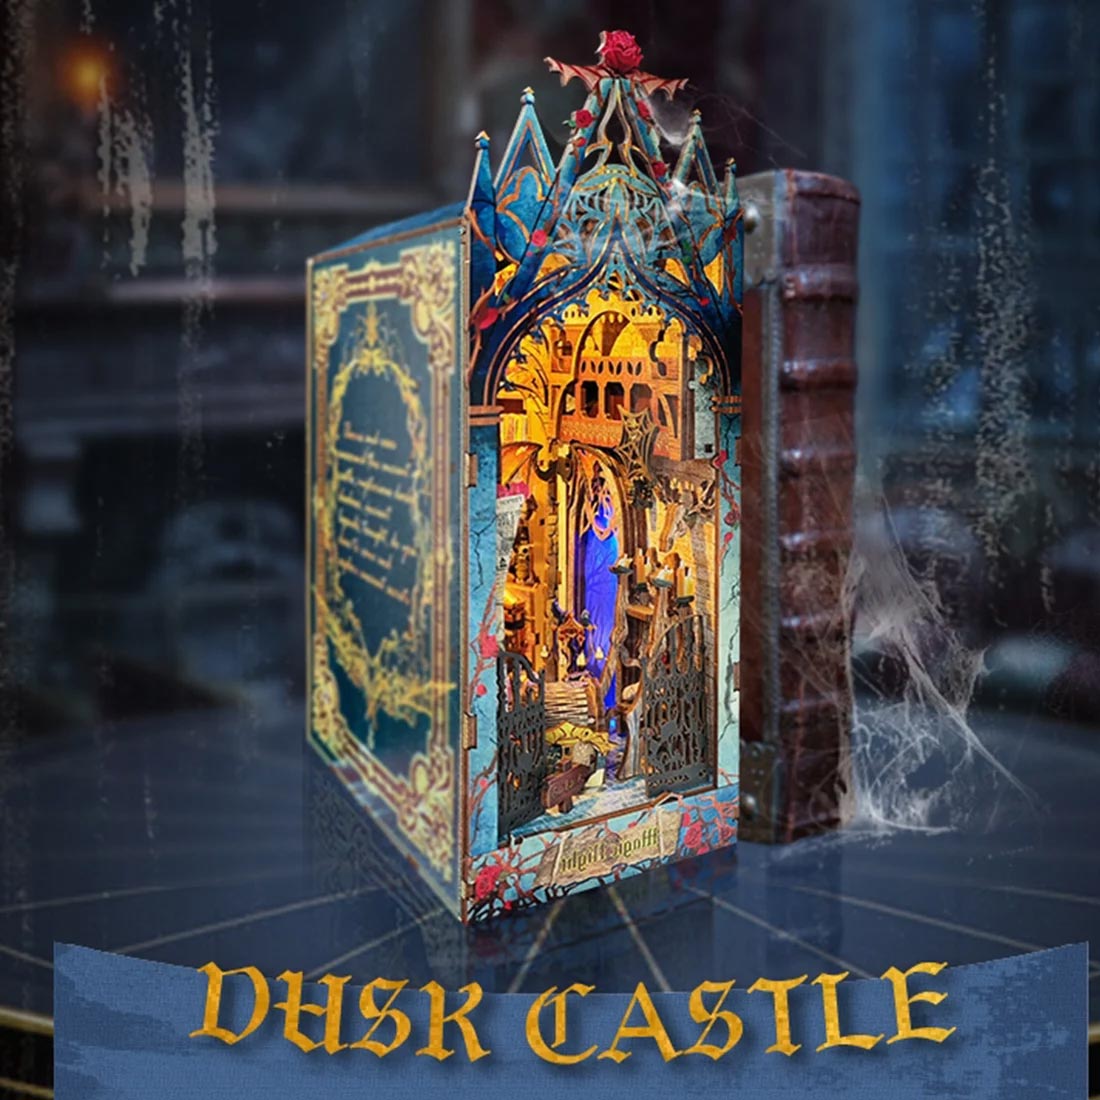 Twilight Castle 3D Wooden Puzzle Book Nook